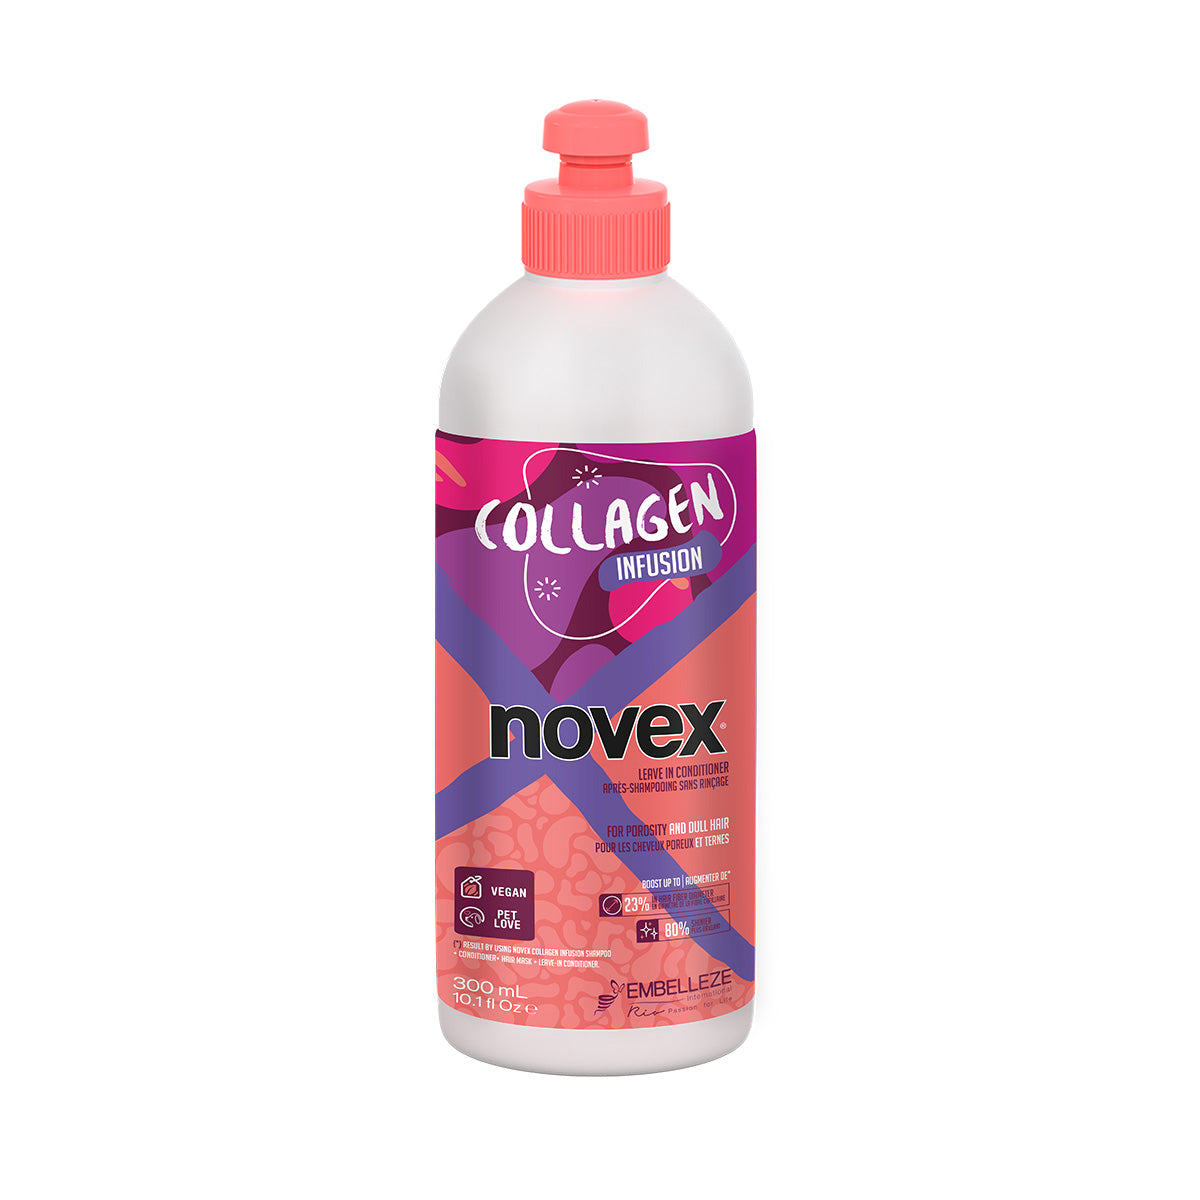 巴西 Novex 膠原蛋白免洗護髮膜 Novex Infused Collagen Leave in Conditioner 300ml